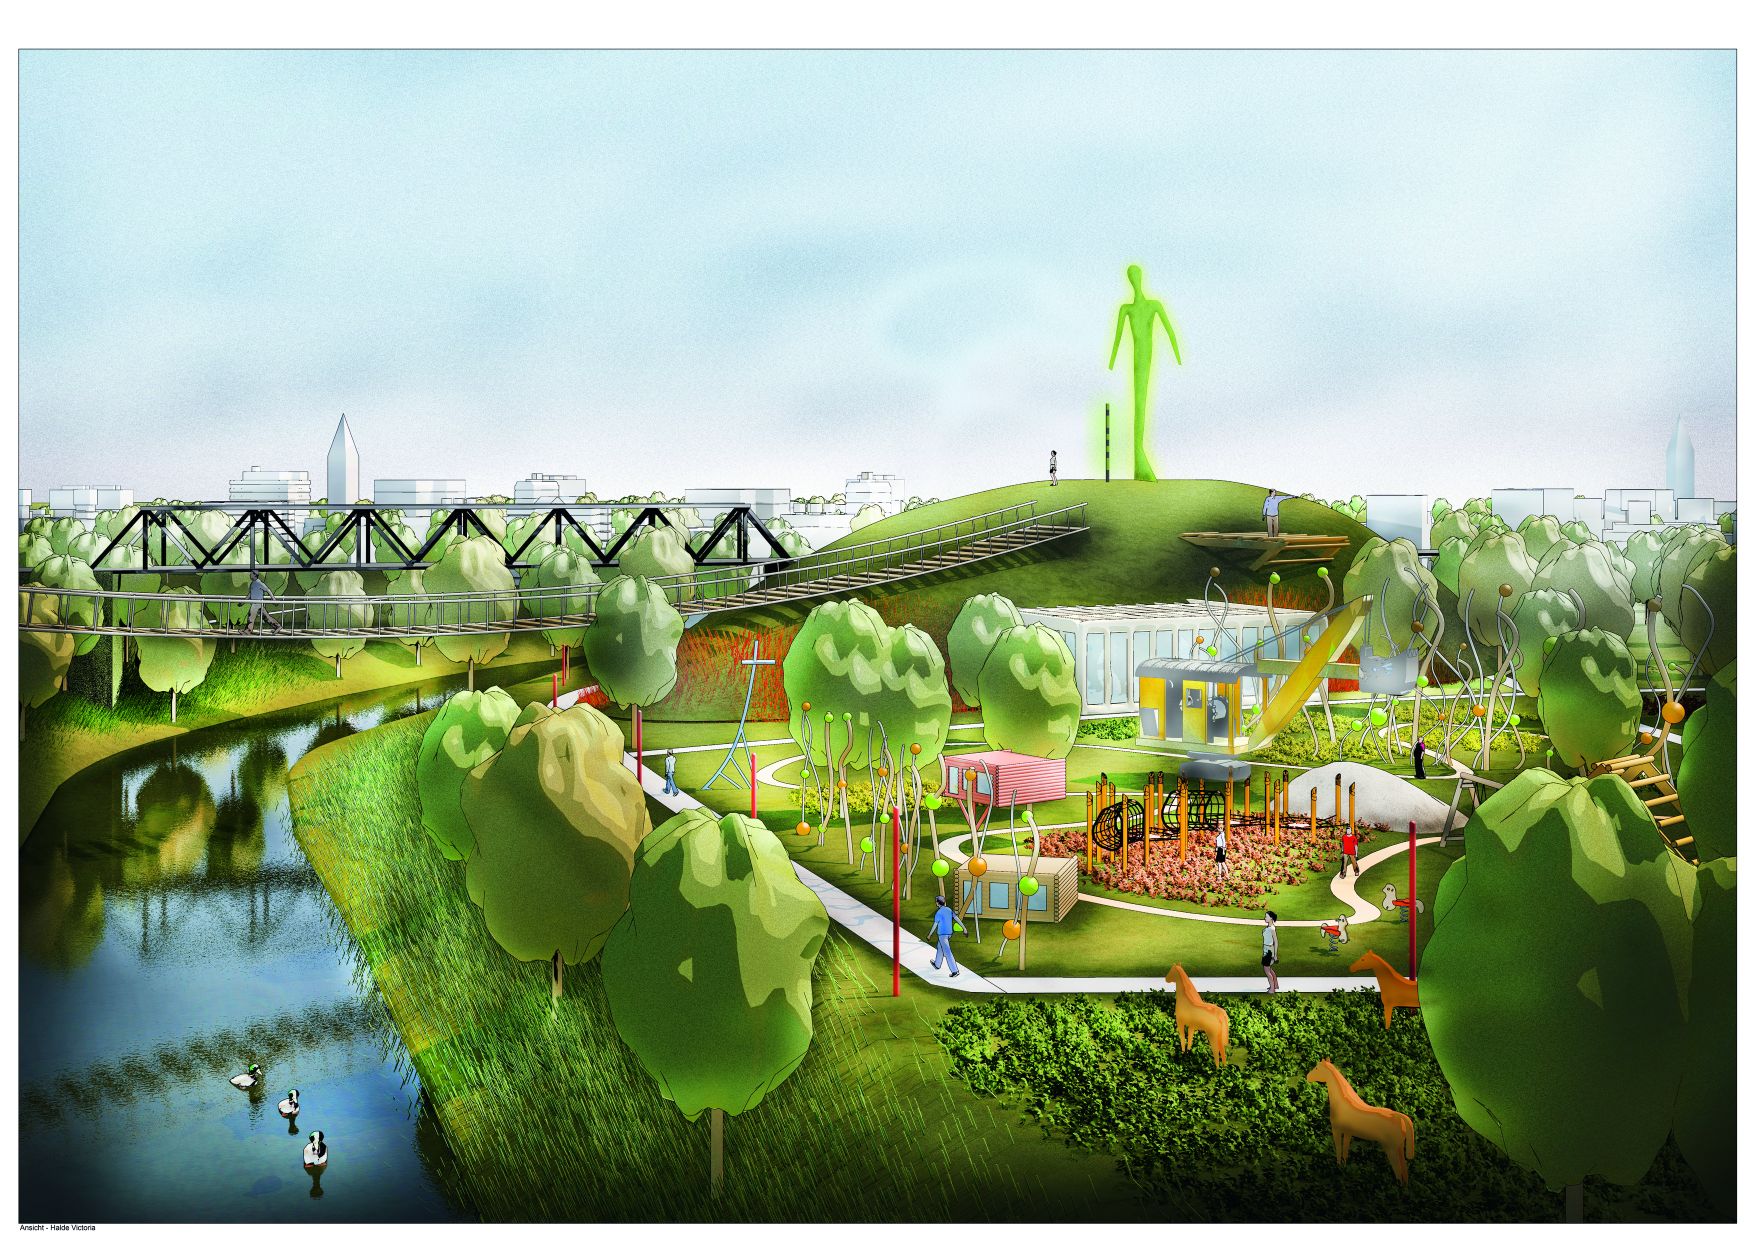 Entwurfsgrafik vom Zukunftsgarten Bergkamen/Lünen für die Internationale Gartenausstellung IGA 2027 in der Metropole Ruhr. Grafik: ARGE Landschaft planen +bauen GmbH.